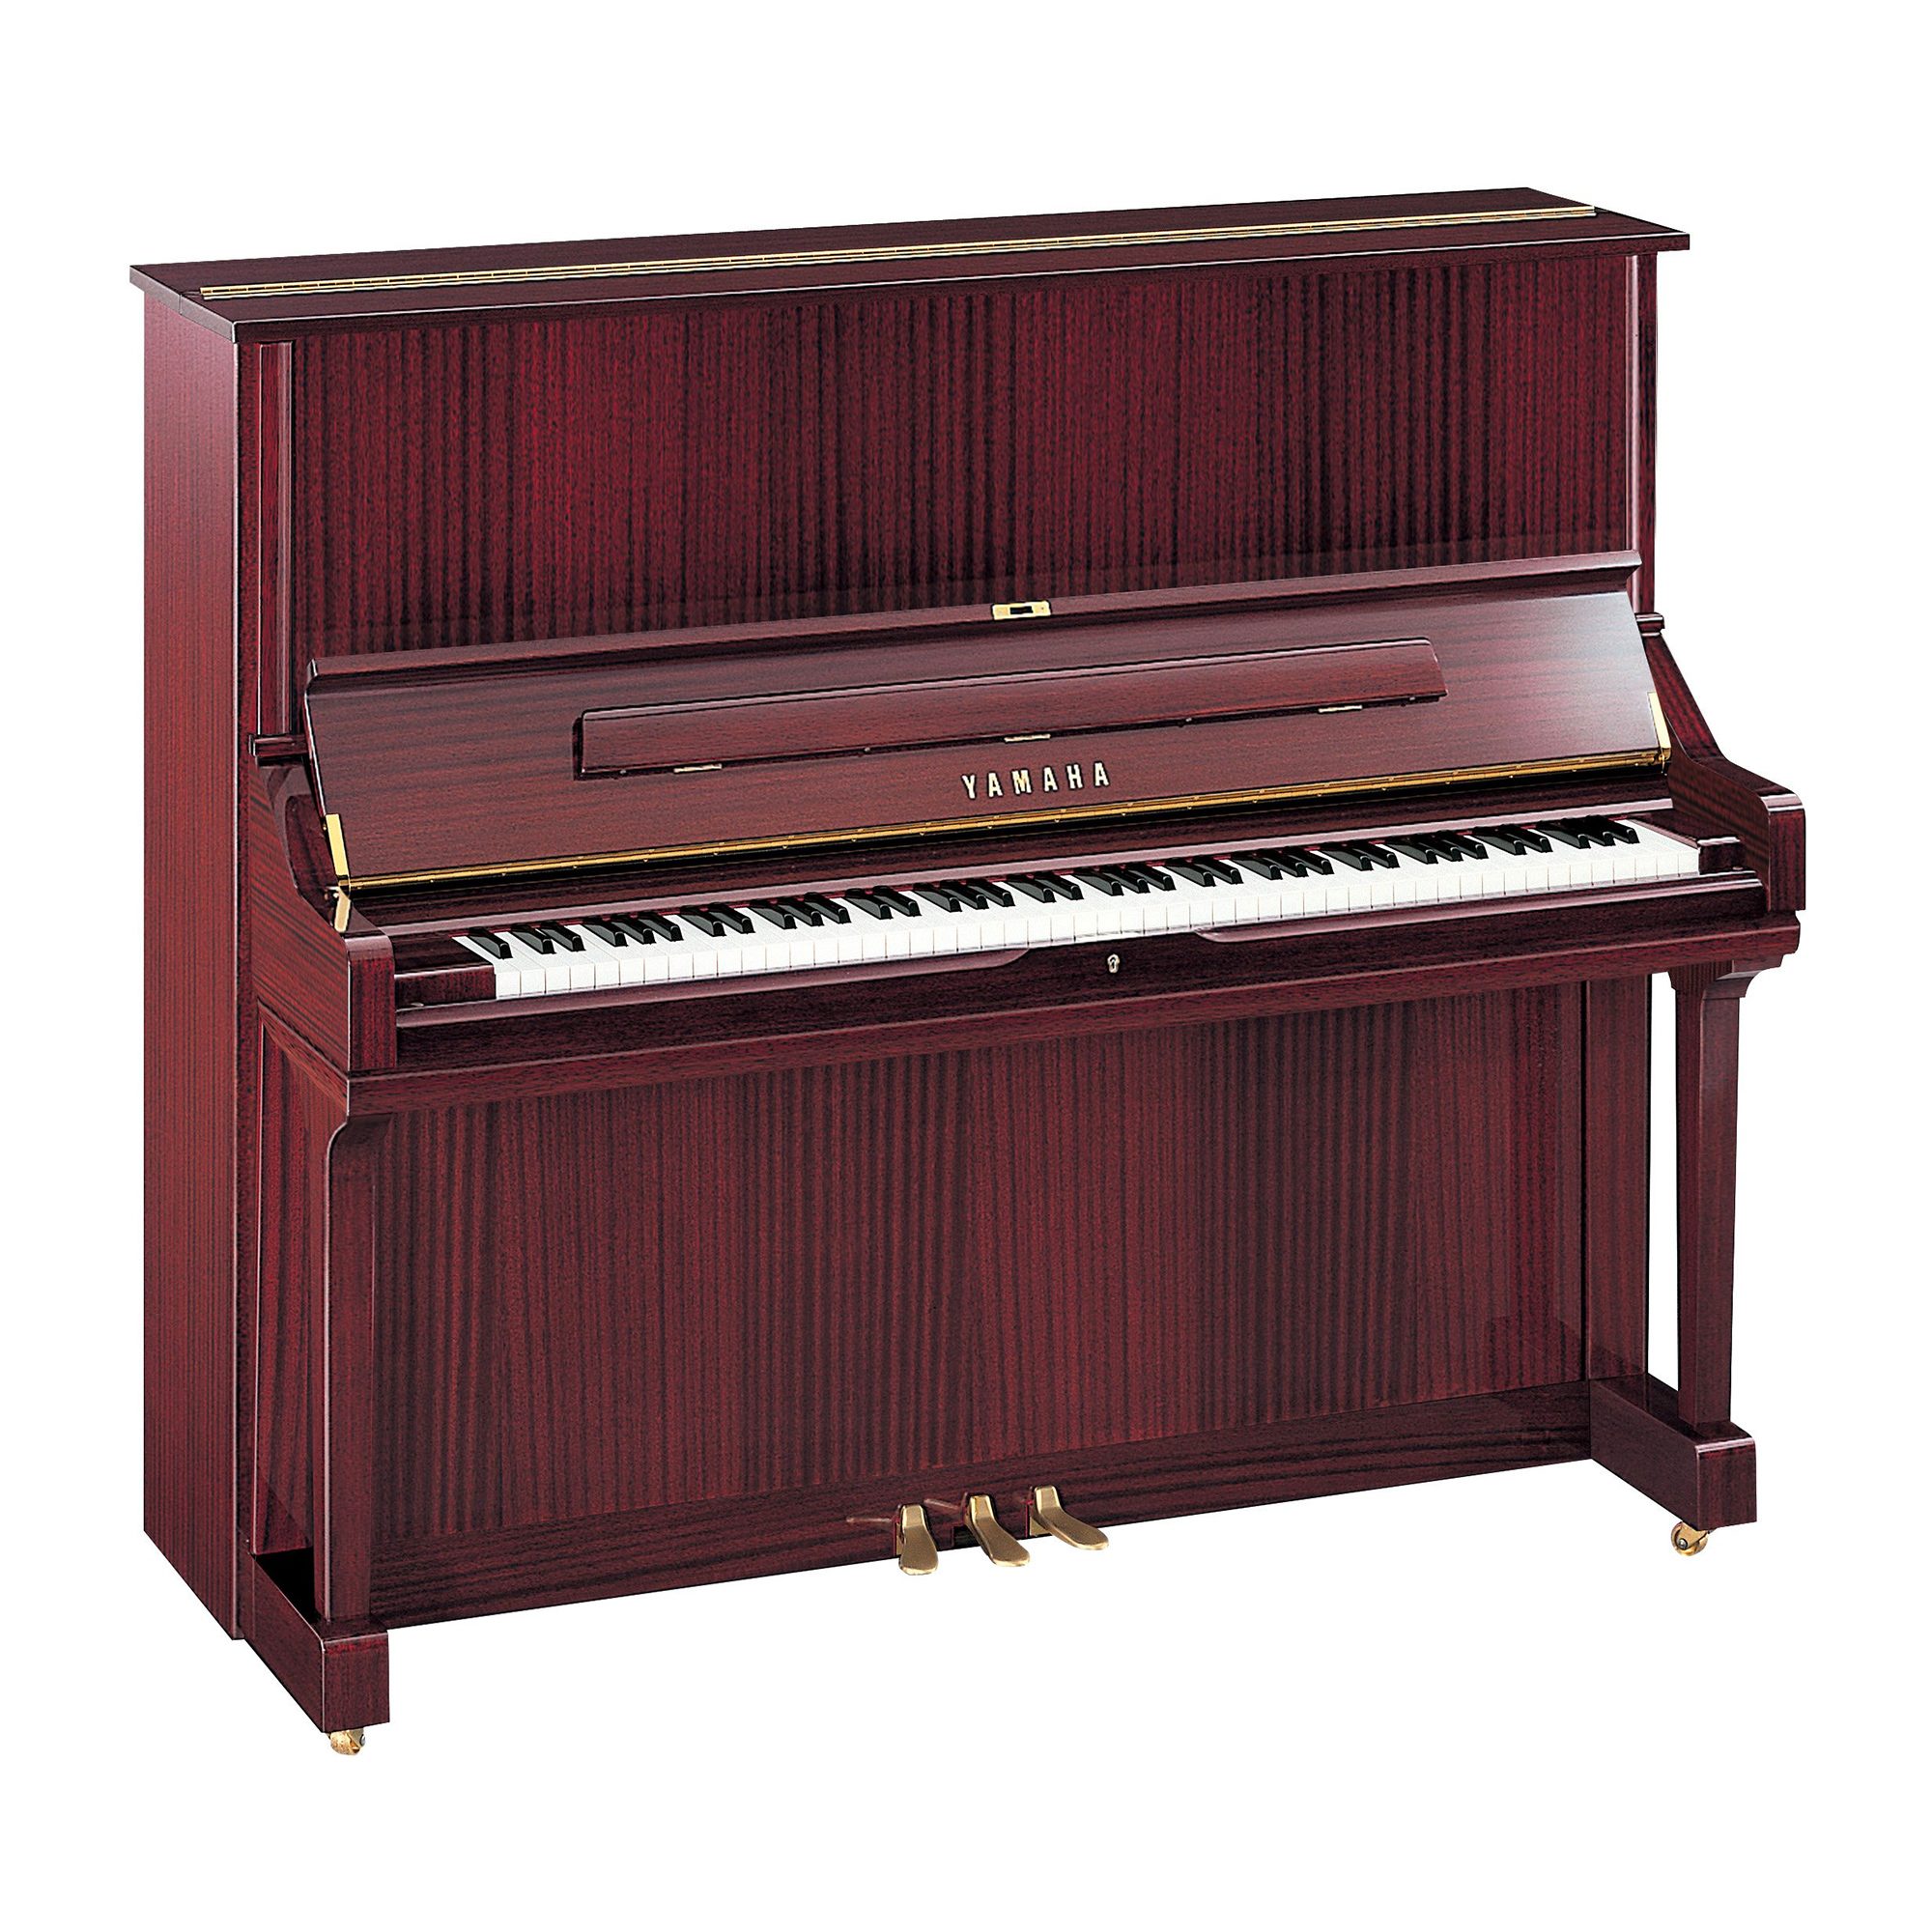 Serie U - Descripción - PIANOS VERTICALES - Pianos - Instrumentos musicales  - Productos - Yamaha - España